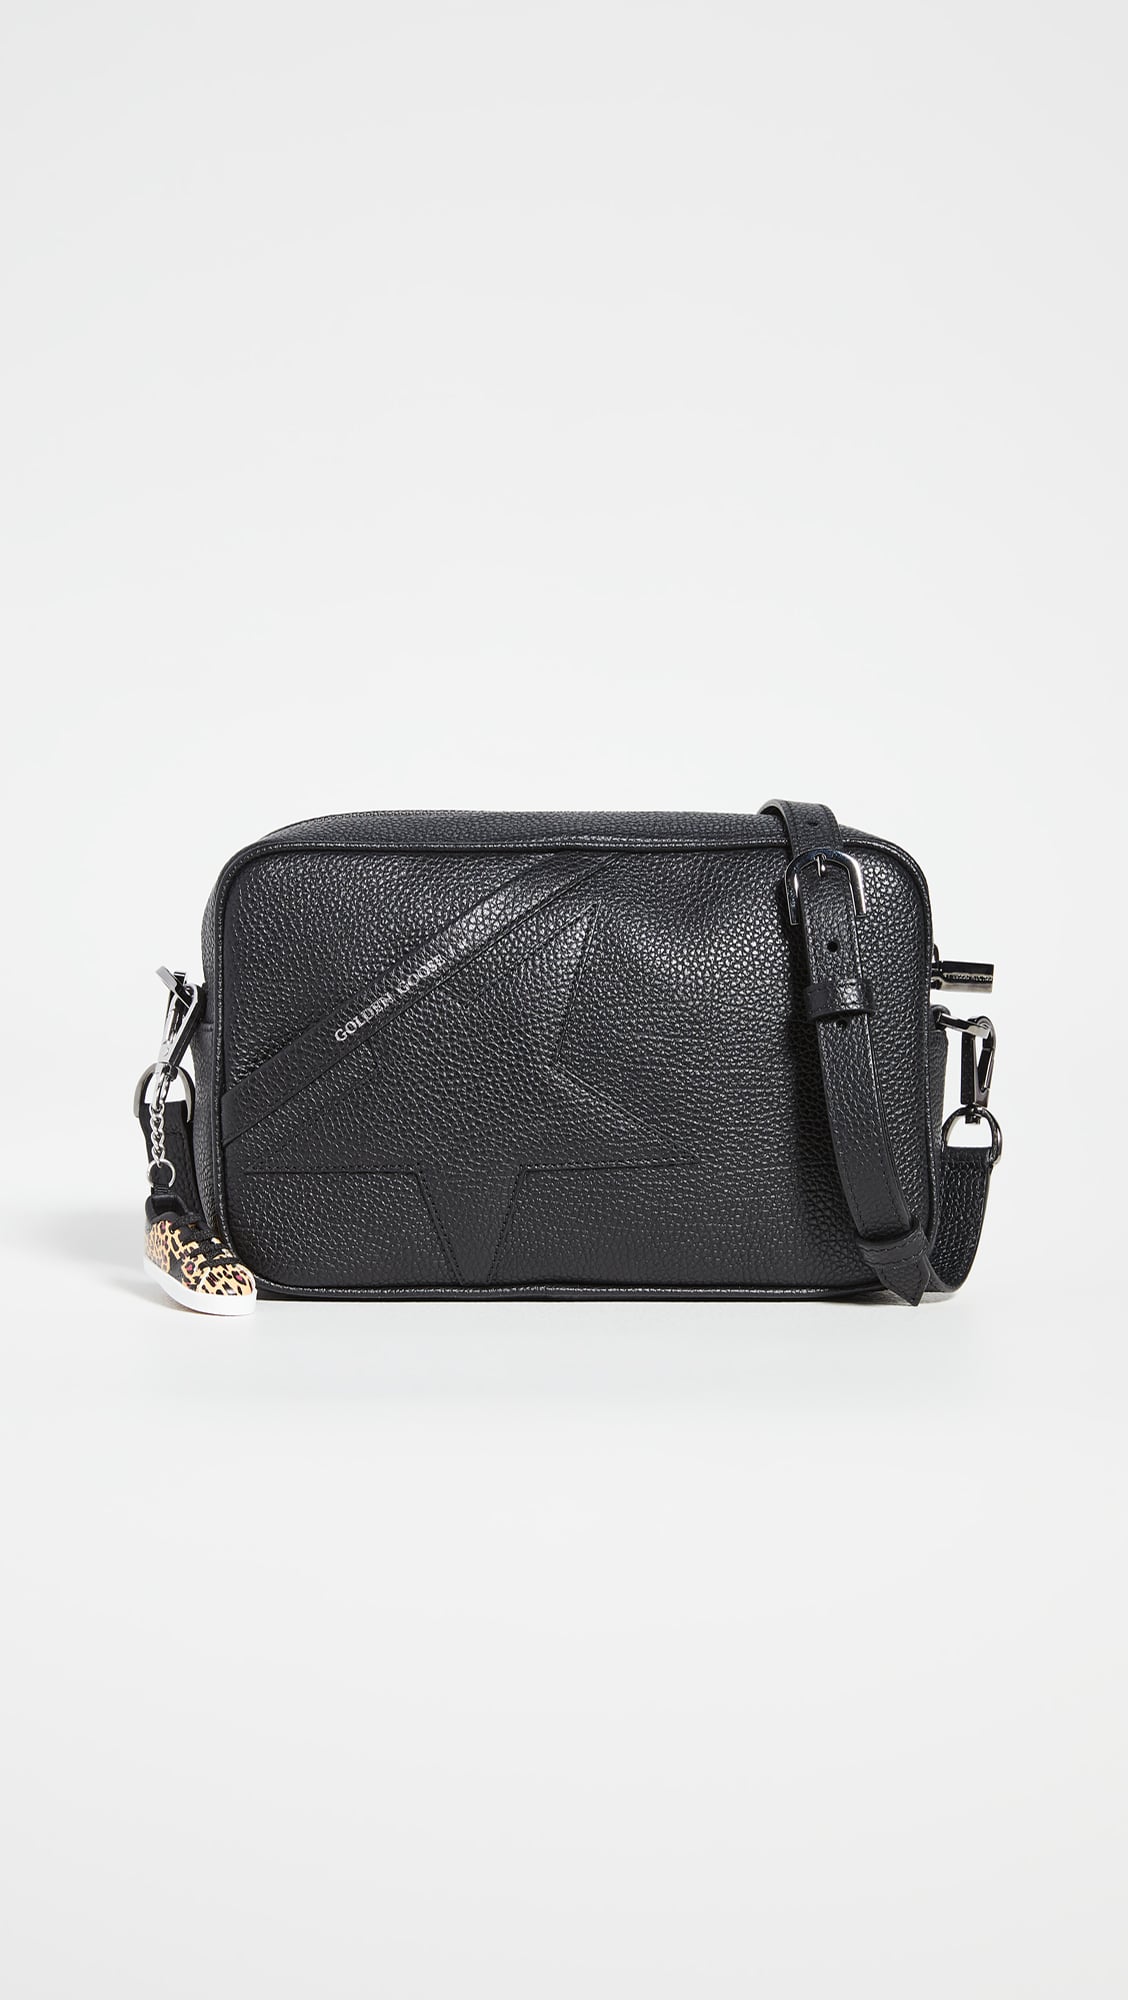 Nisha, A Vegan Leather Pochette (Navy Blue), Stylish Designer Handbag.